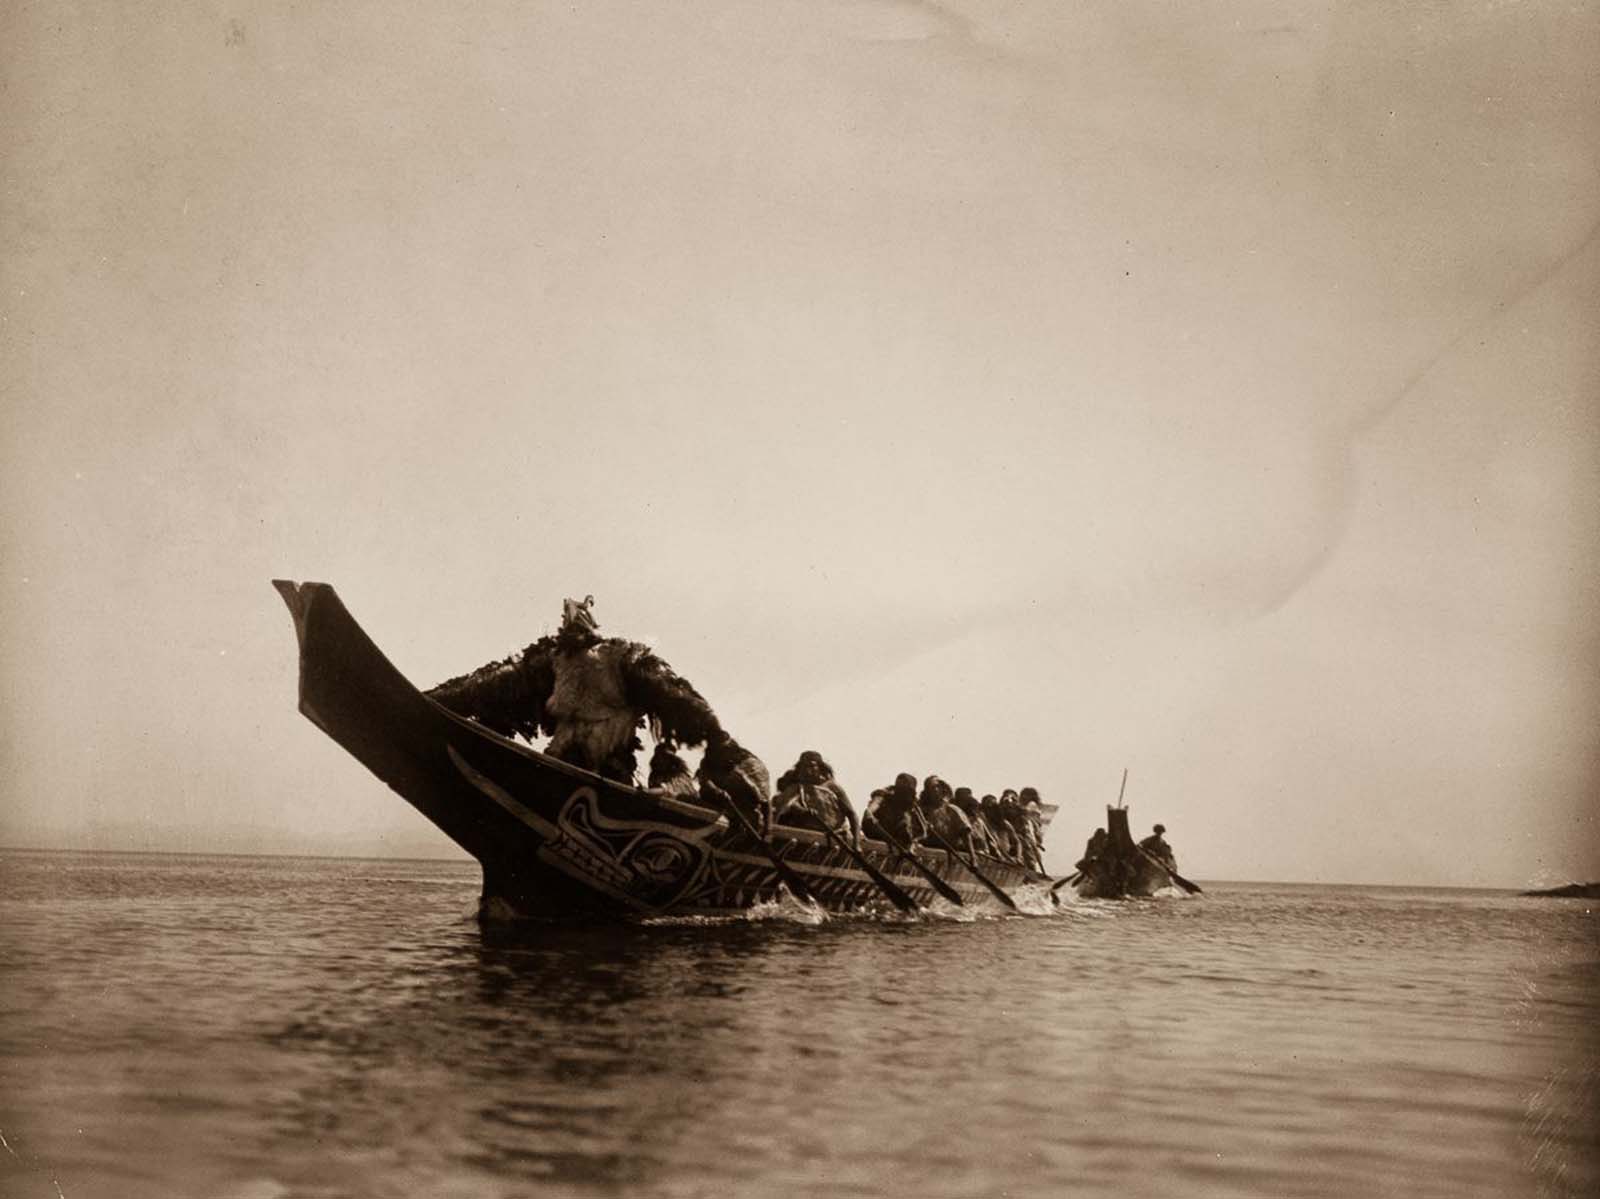 Kwakiutl people in canoes in British Columbia. 1914.